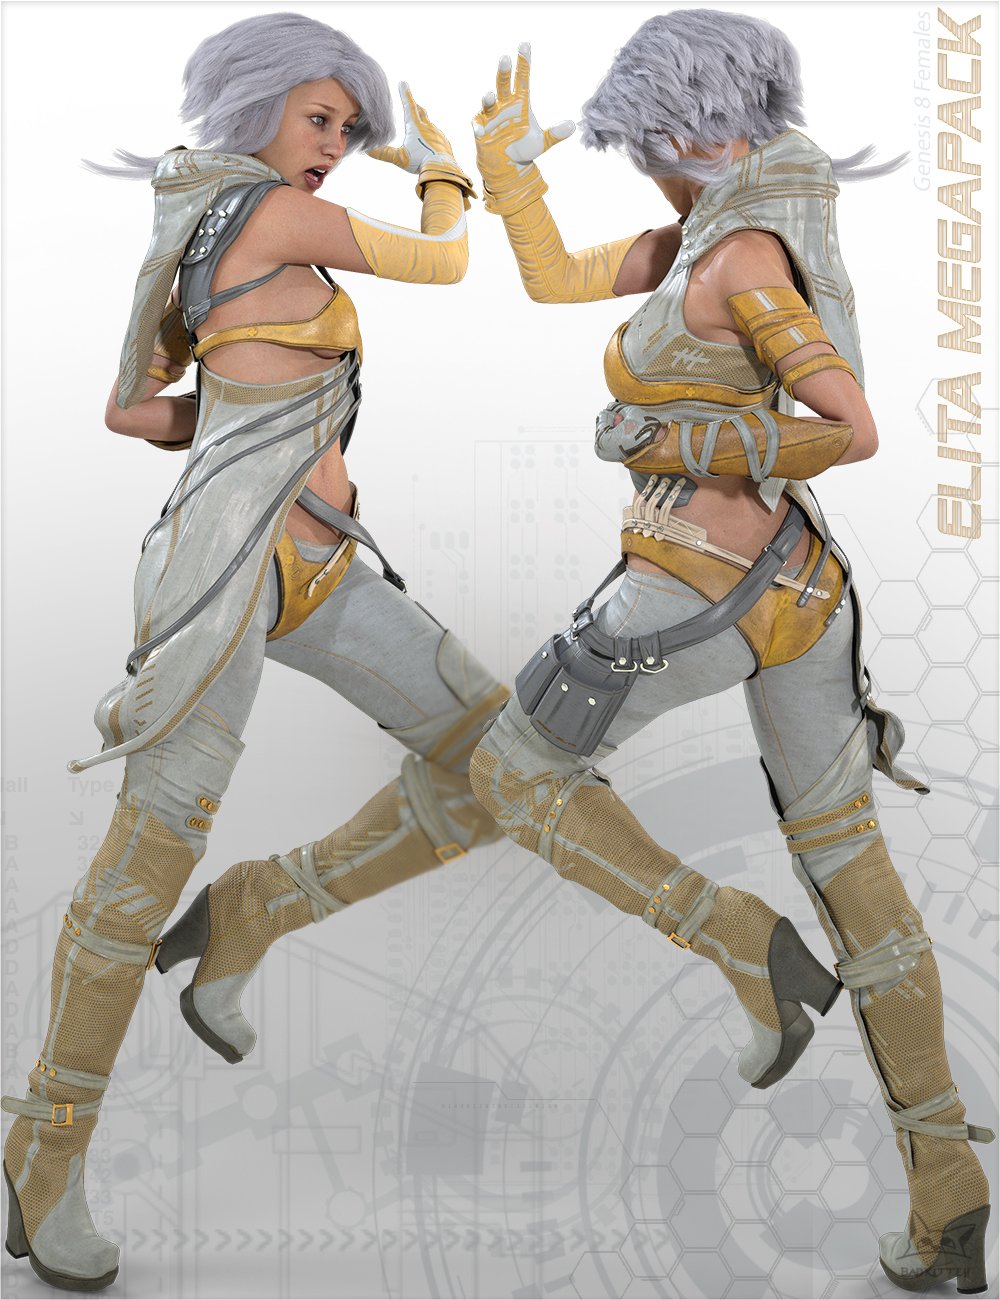 Elita Cyberpunk Megapack for Genesis 8 Female(s) by: BadKitteh Co, 3D Models by Daz 3D